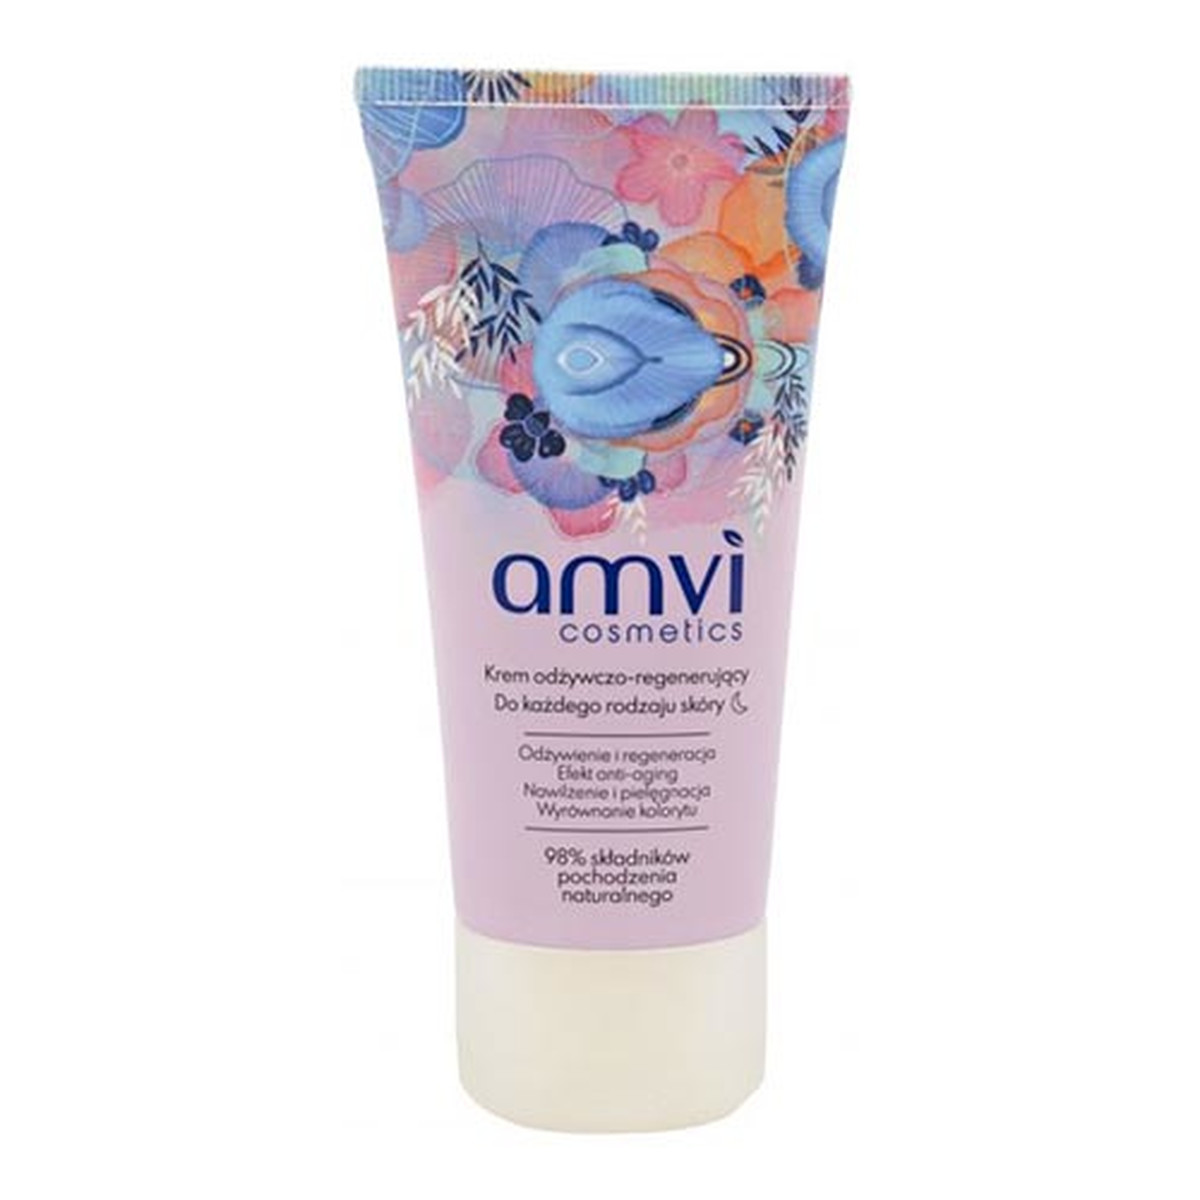 Amvi Cosmetics Krem odżywczo-regenerujący na noc do każdego rodzaju skóry 50ml